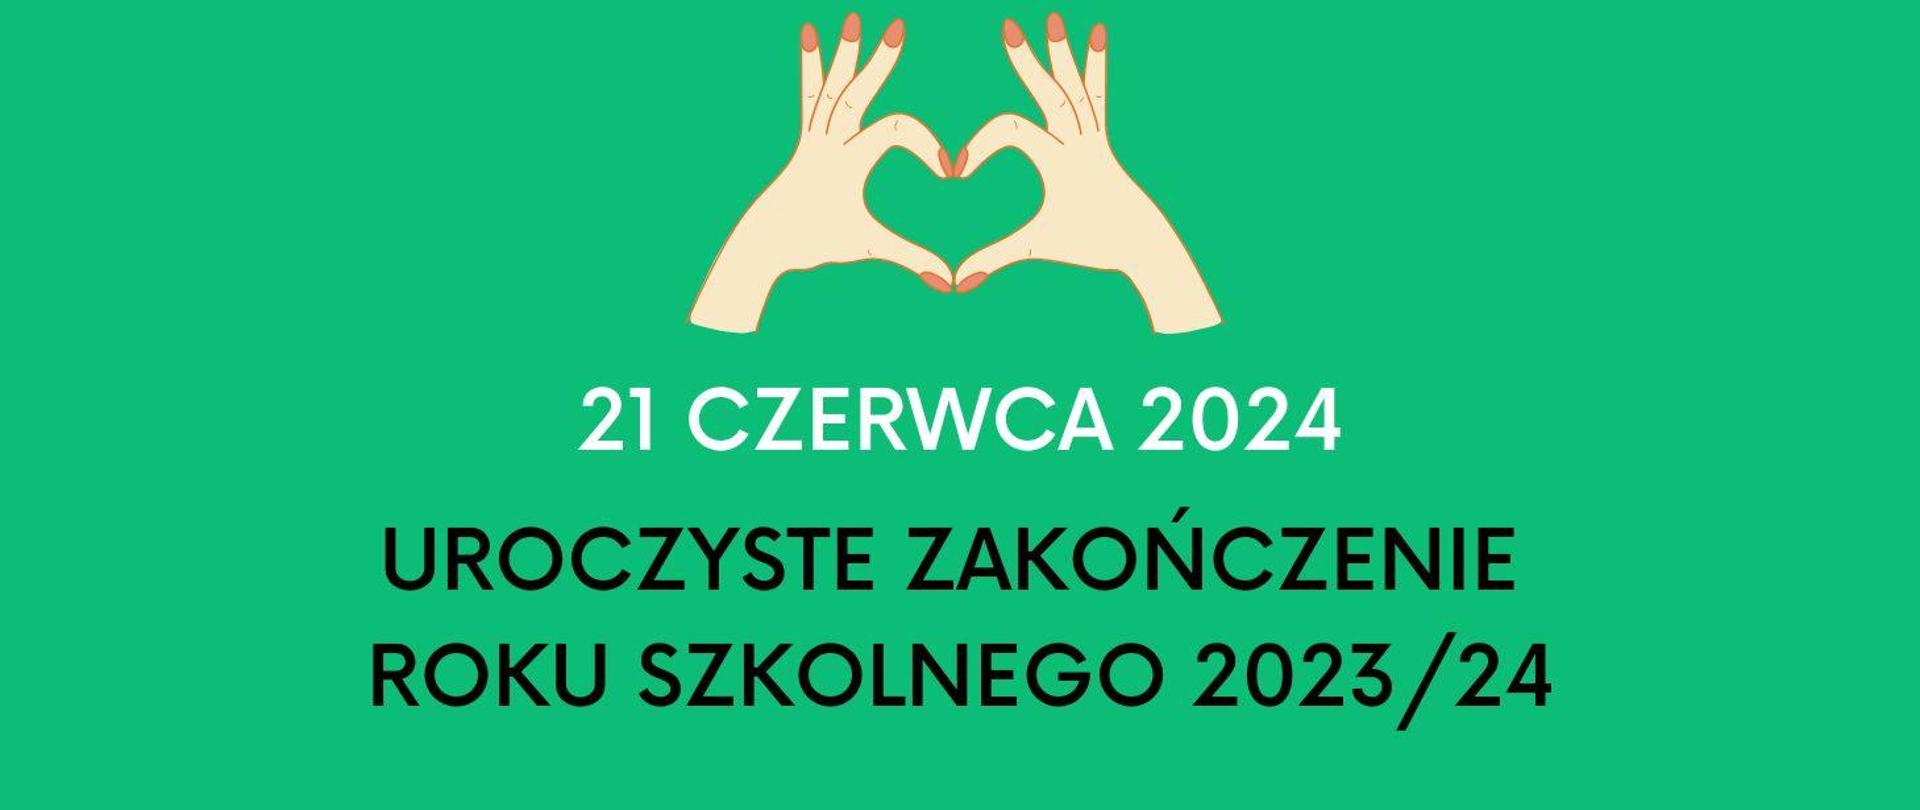 Zielony plakat uroczyste zakończenie roku szkolnego 2023-2024